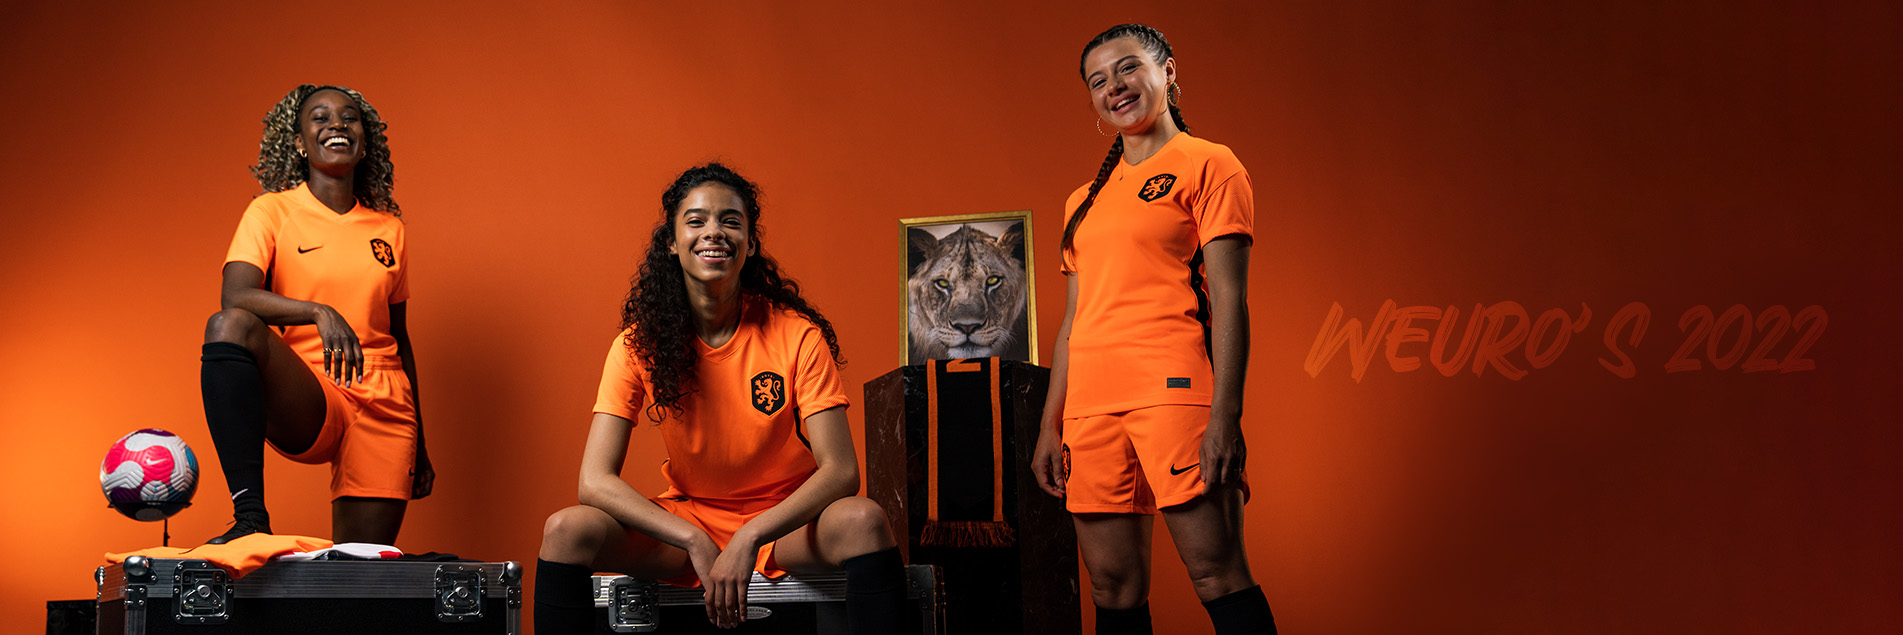 OranjeLeeuwinnen: De reis van het vrouwenvoetbal